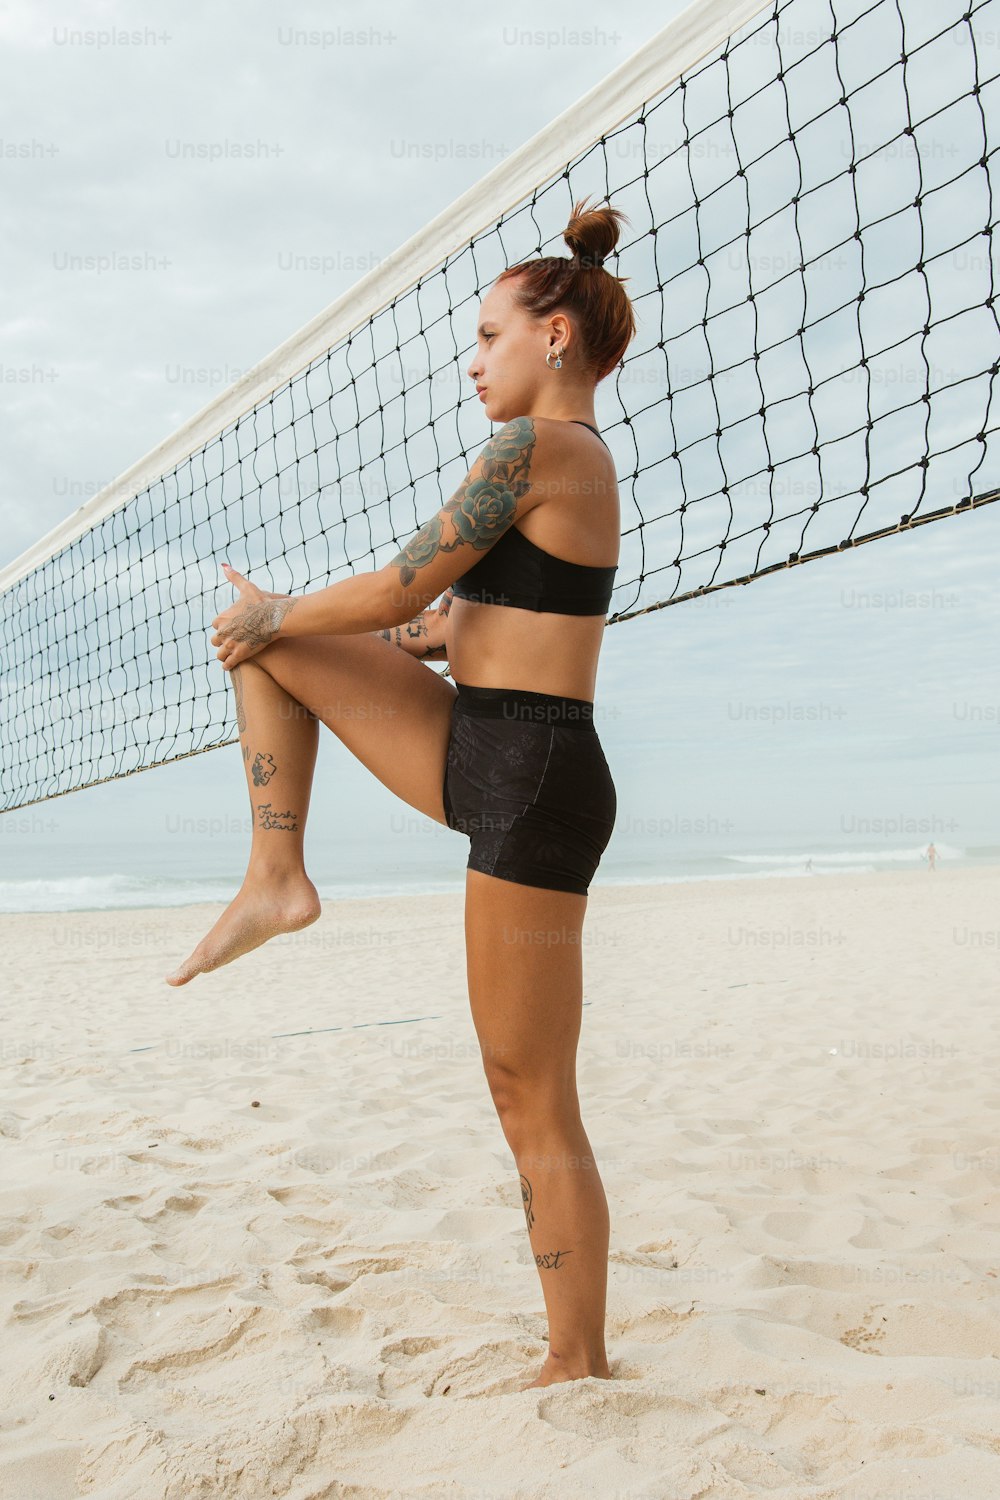 Una donna in piedi su una spiaggia vicino a una rete da pallavolo